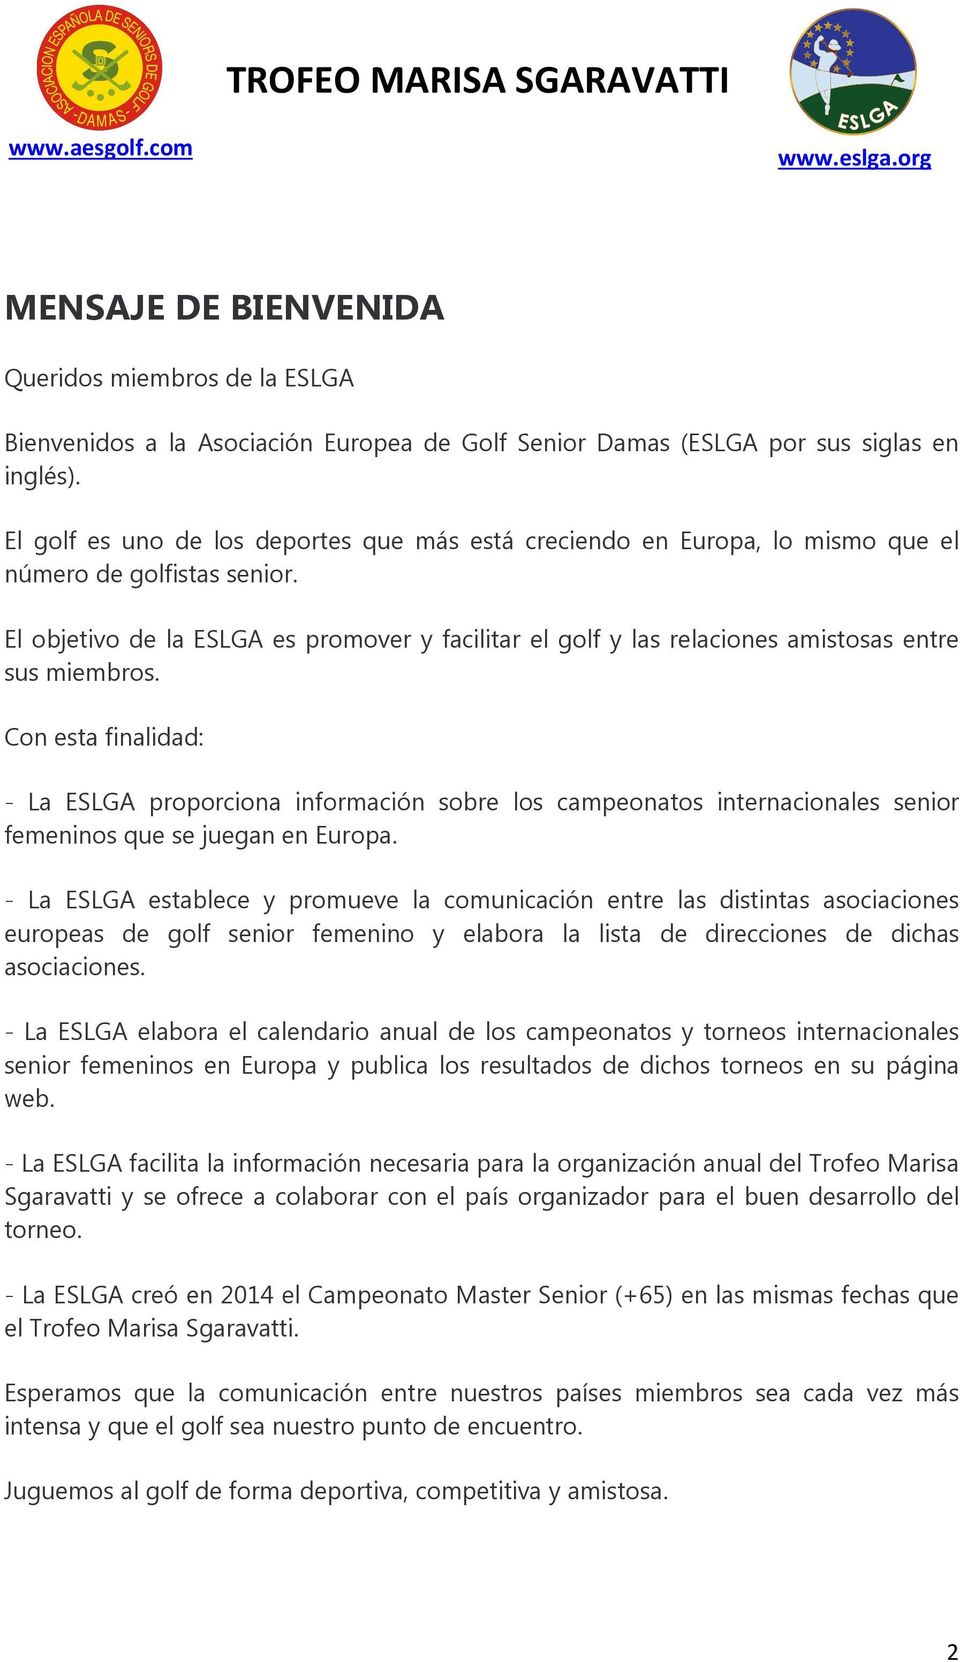 El objetivo de la ESLGA es promover y facilitar el golf y las relaciones amistosas entre sus miembros.